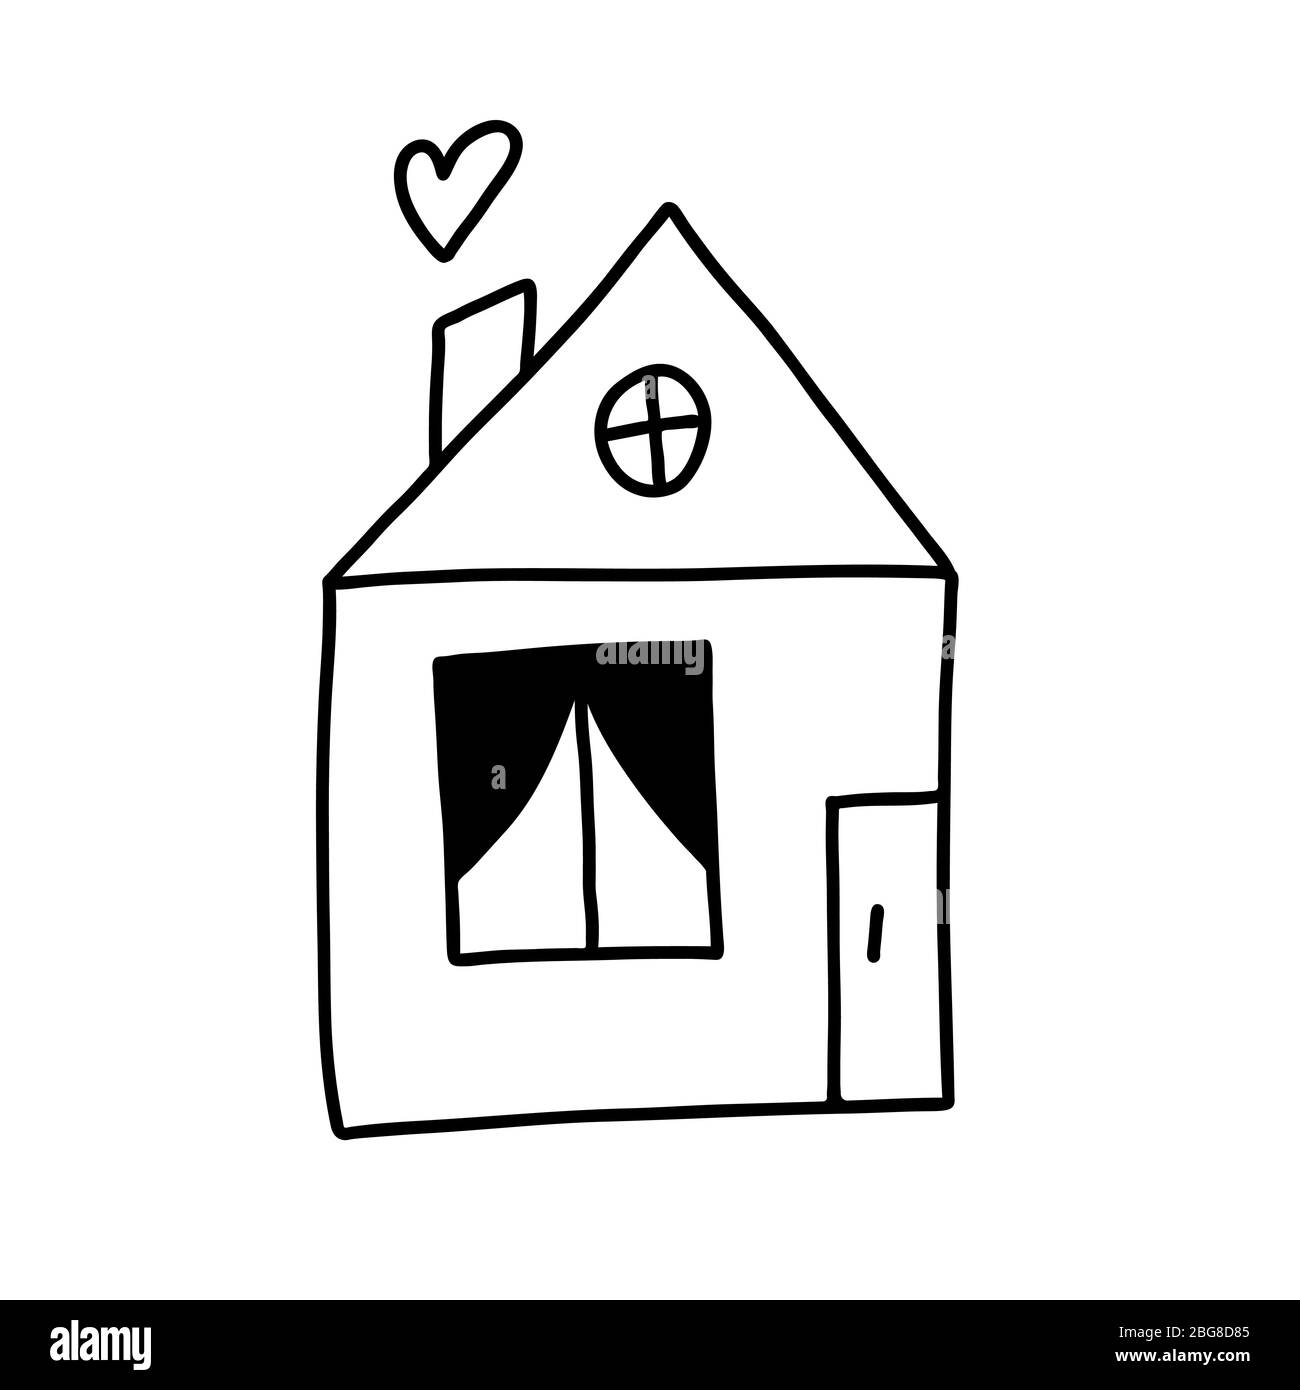 Joli dessin main doodle icône simple de maison avec porte, fenêtre, toit et cheminée, où est le coeur au lieu de fumée. Isolé sur fond blanc Illustration de Vecteur